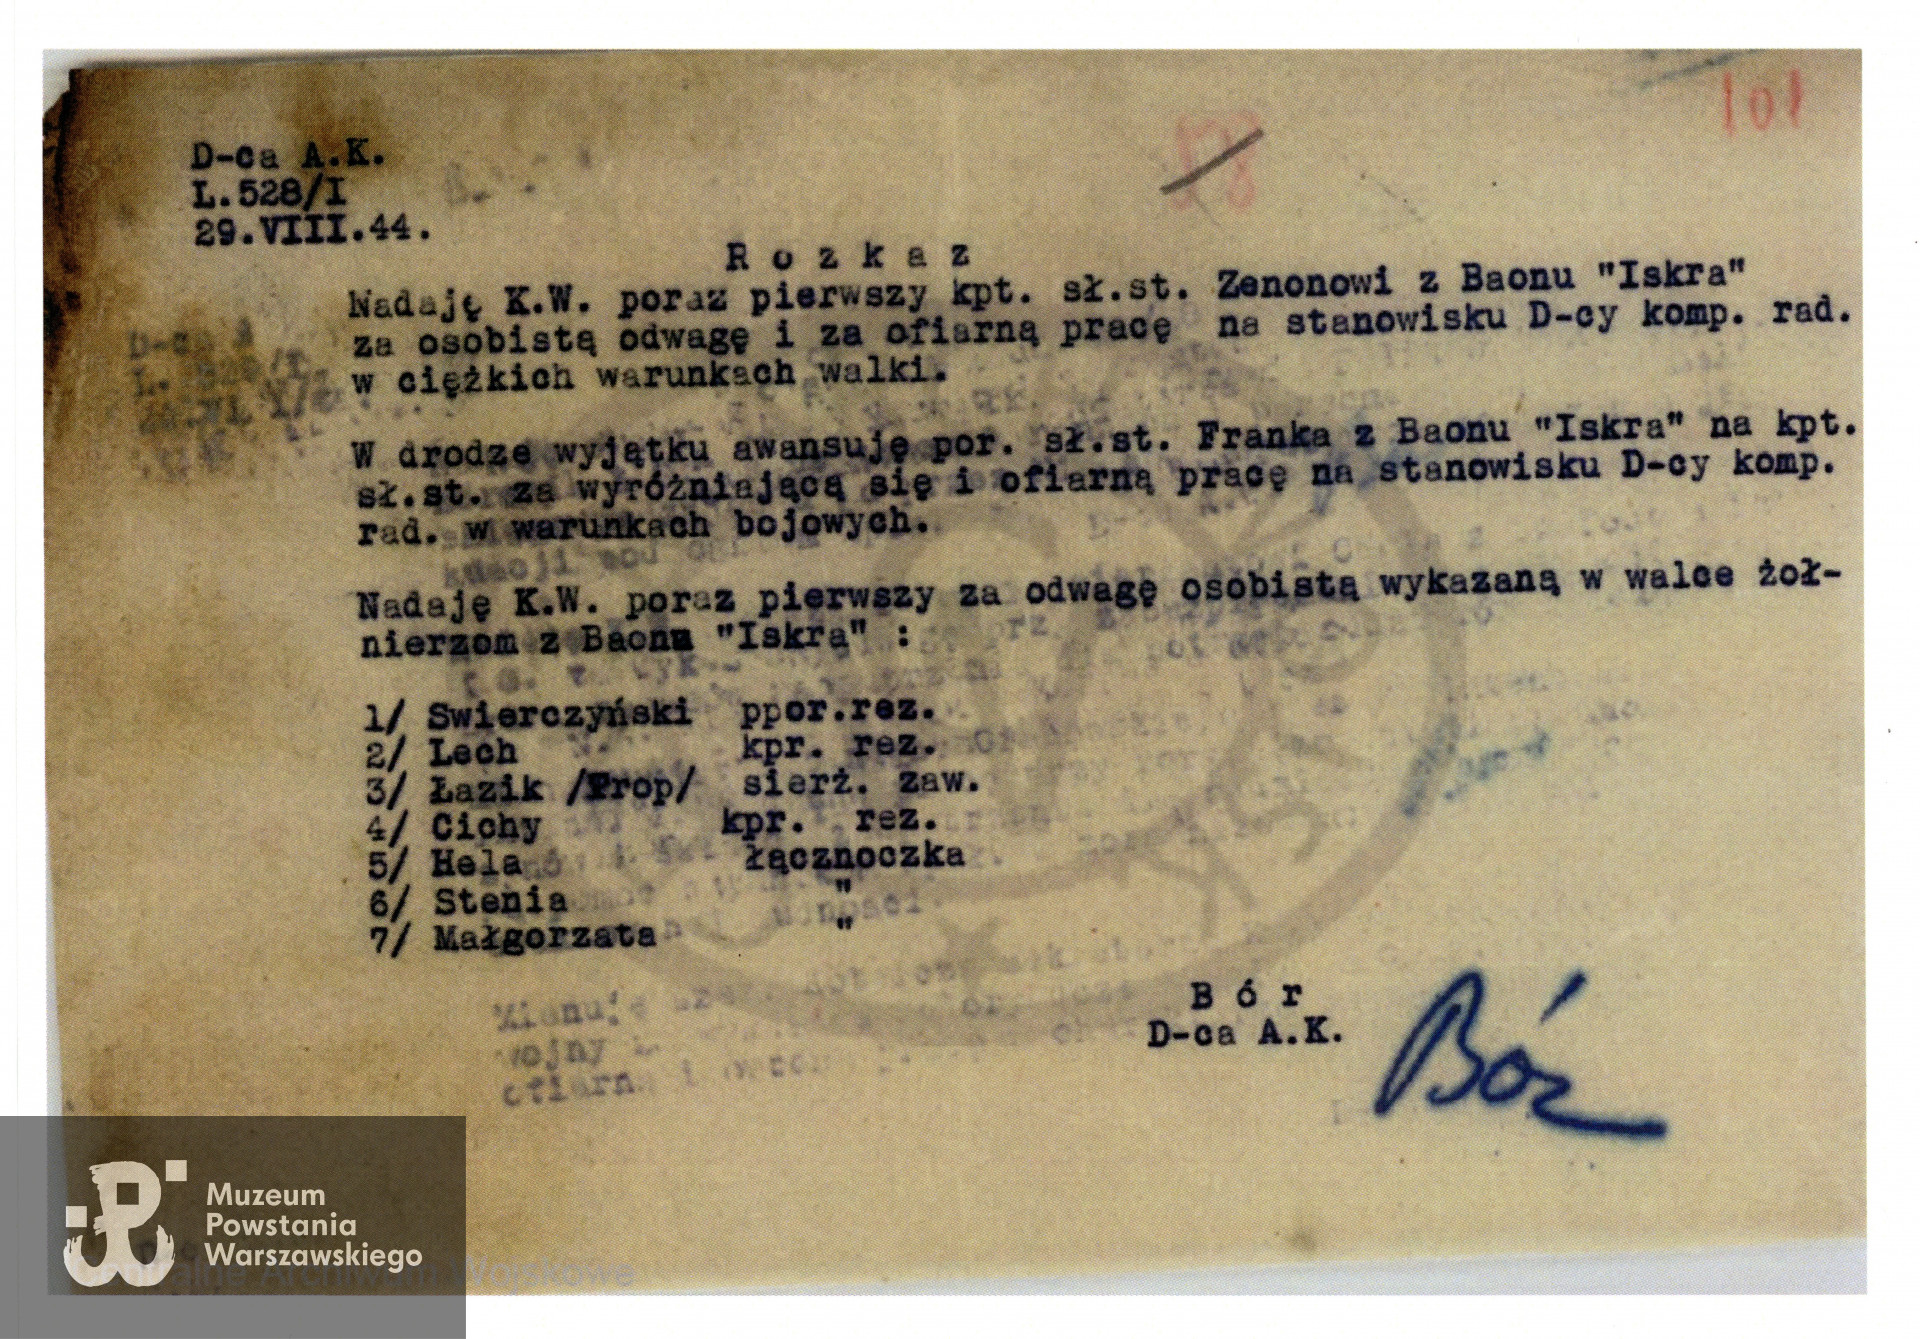 Rozkaz D-cy Armii Krajowej Tadeusza Komorowskiego "Bora" L. 528/I z dn. 29.08.1944 o nadaniu Krzyża Walecznych.